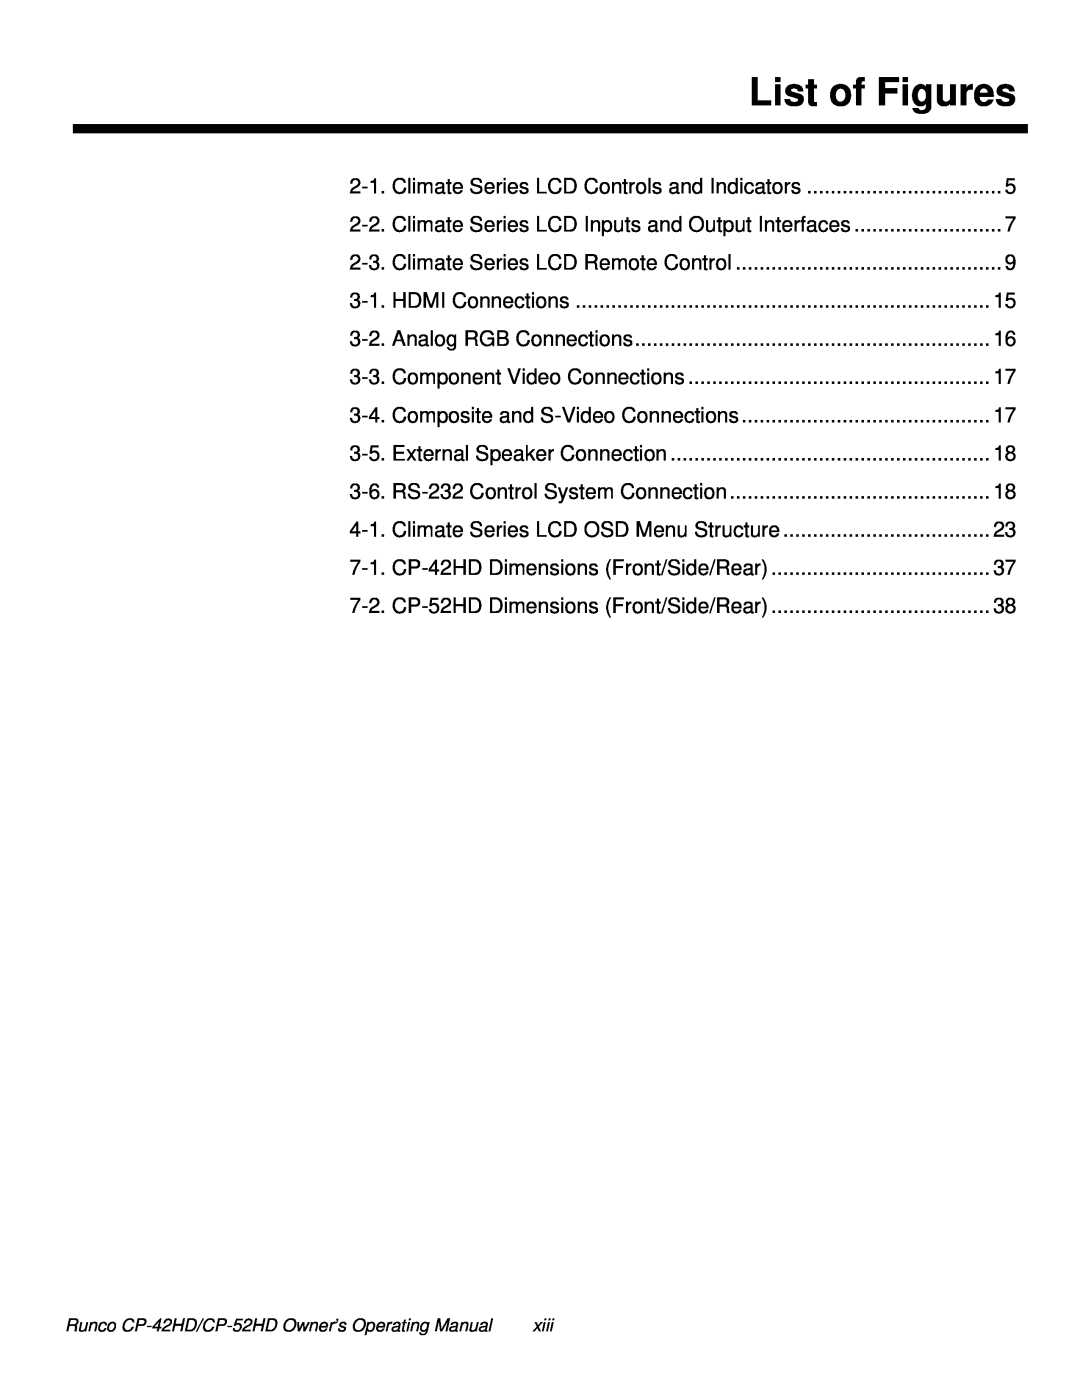 Runco CP-52HD, CP-42HD manual List of Figures 